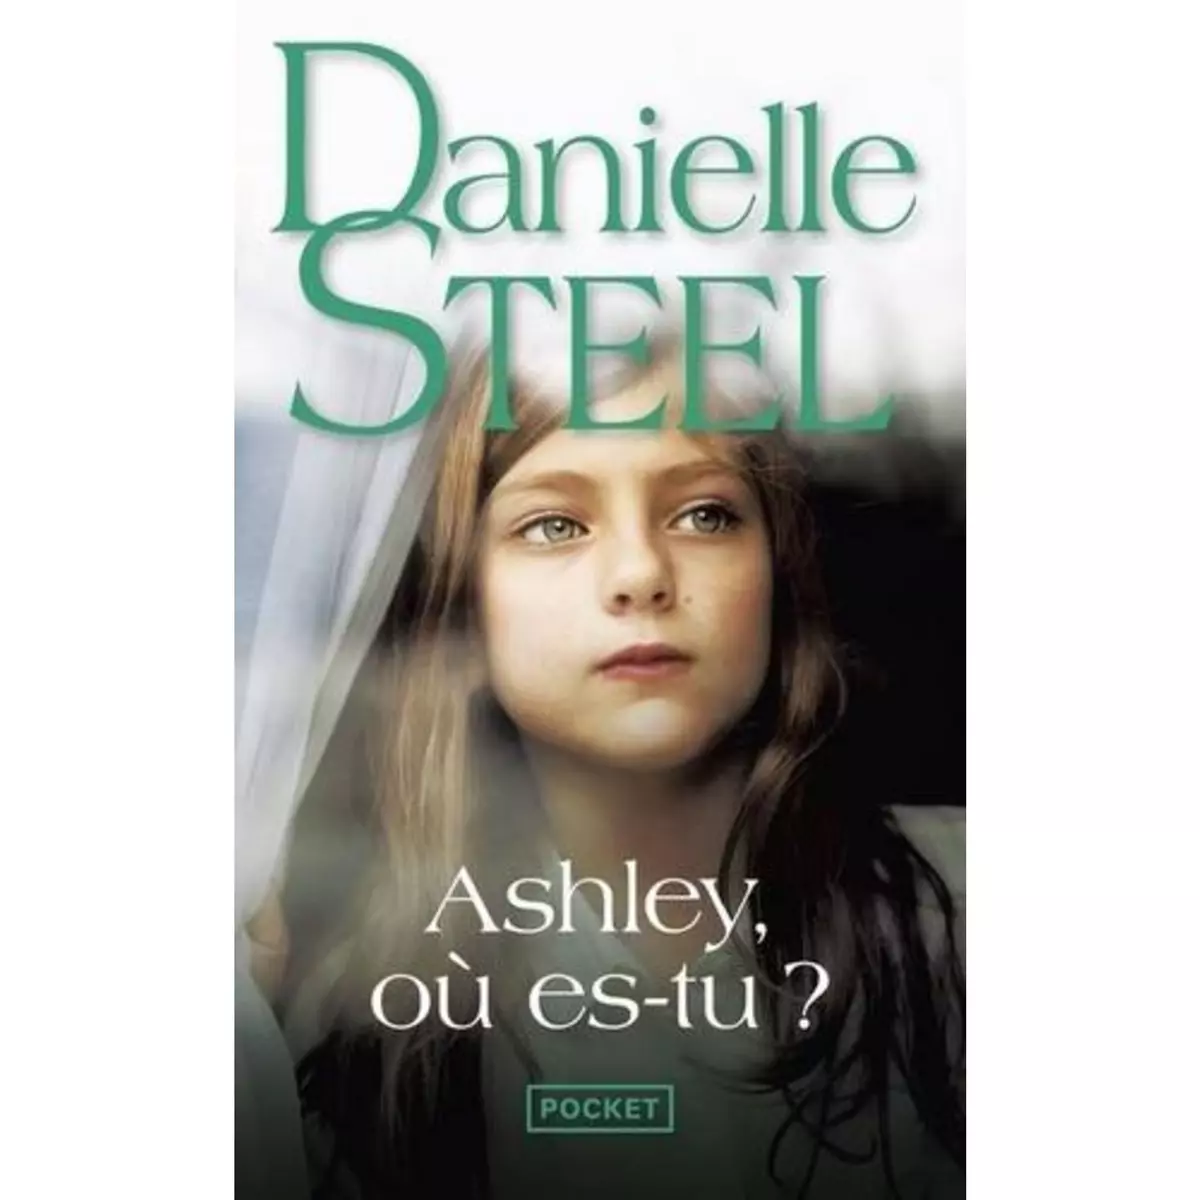  ASHLEY, OU ES-TU ?, Steel Danielle